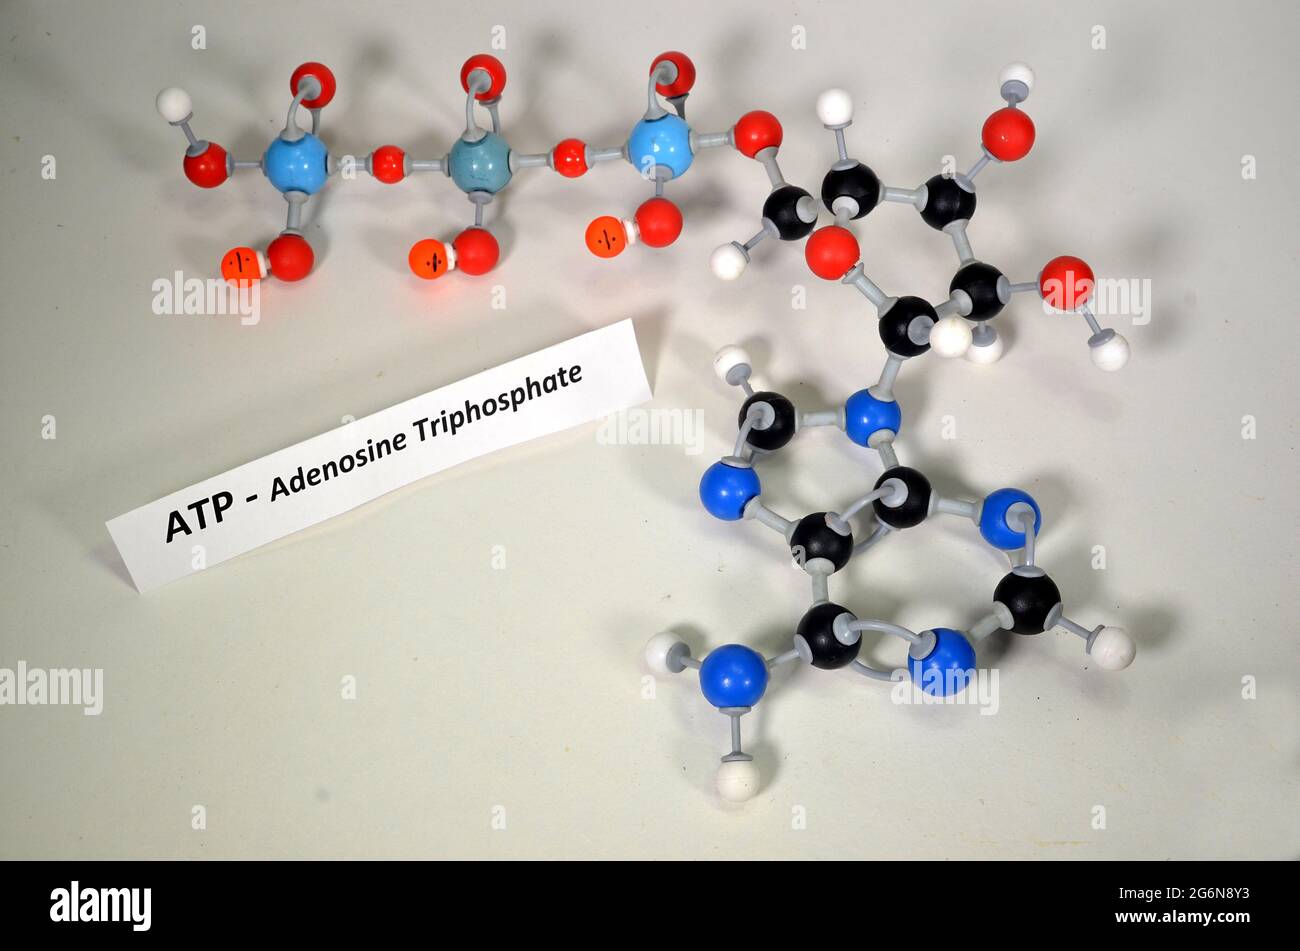 Modello molecolare di ATP, adenosina trifosfato. Il bianco è idrogeno, il nero è carbonio, il rosso è ossigeno, il blu scuro è azoto e il fosforo azzurro. Oppure Foto Stock